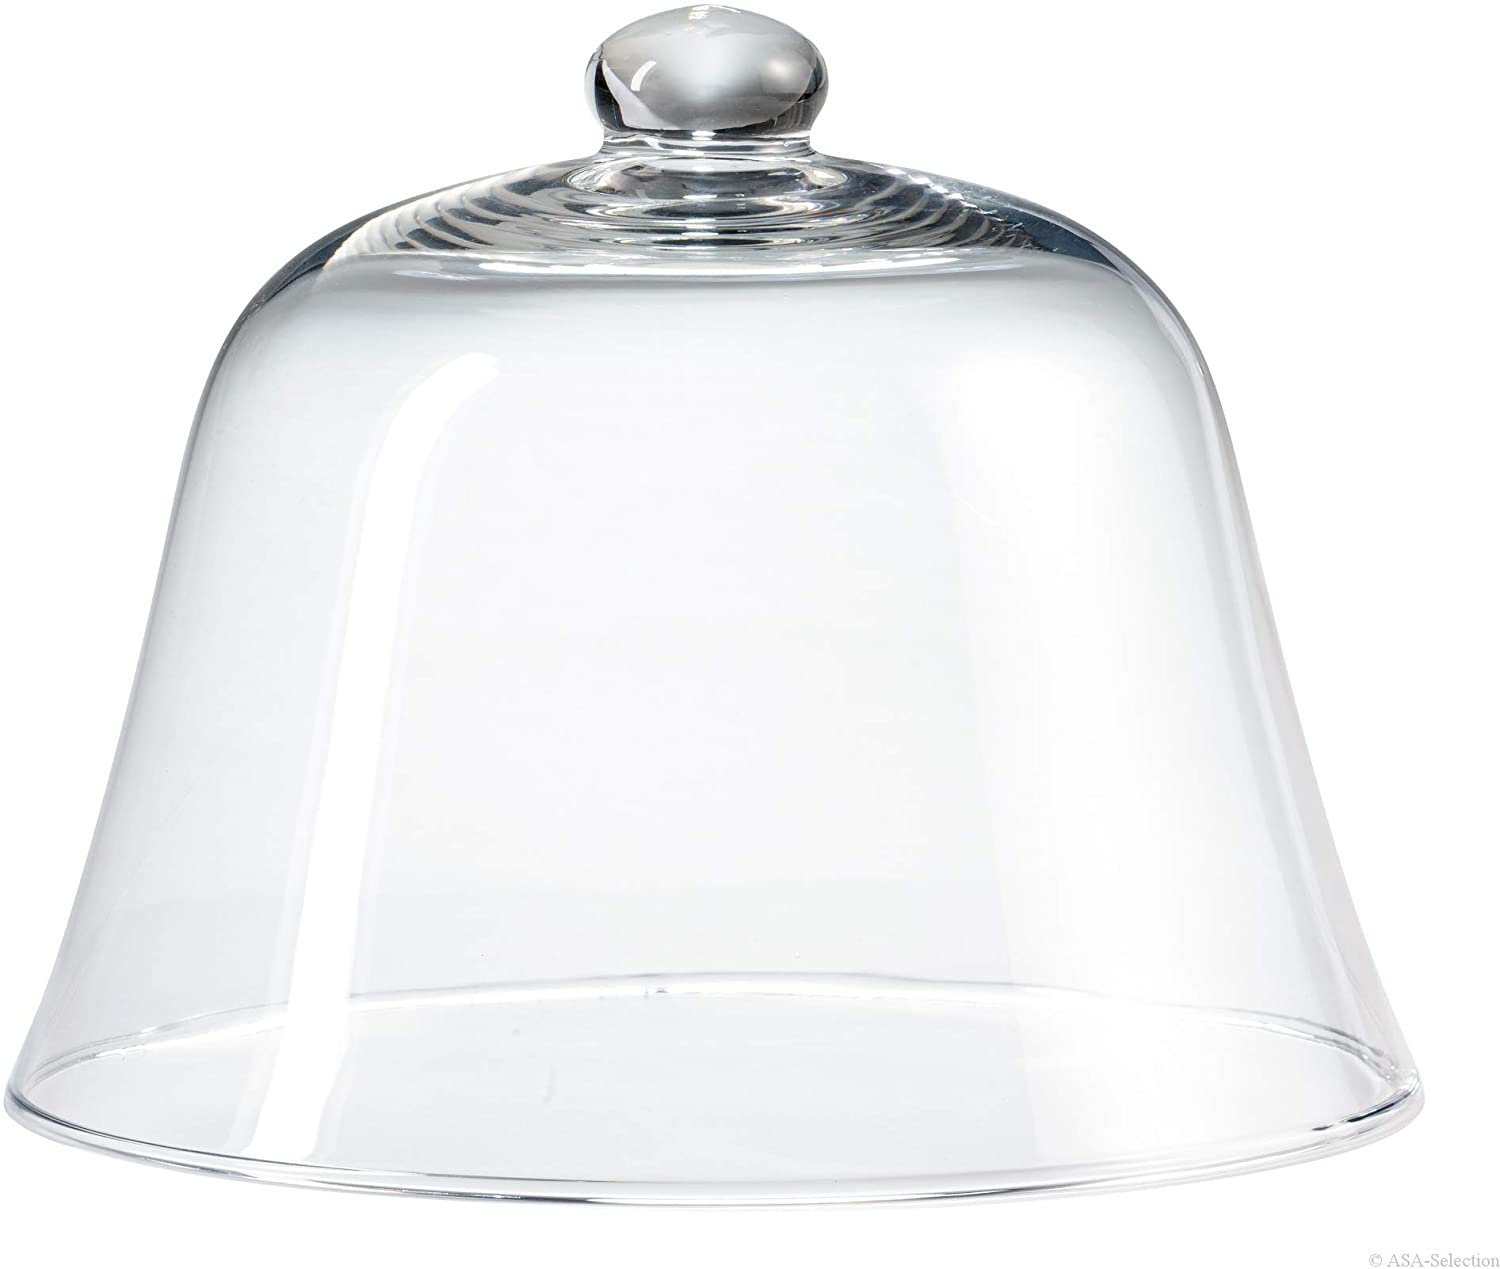 ASA 5301009 Glass Dome, 29 x 29 x 23 cm, transparent